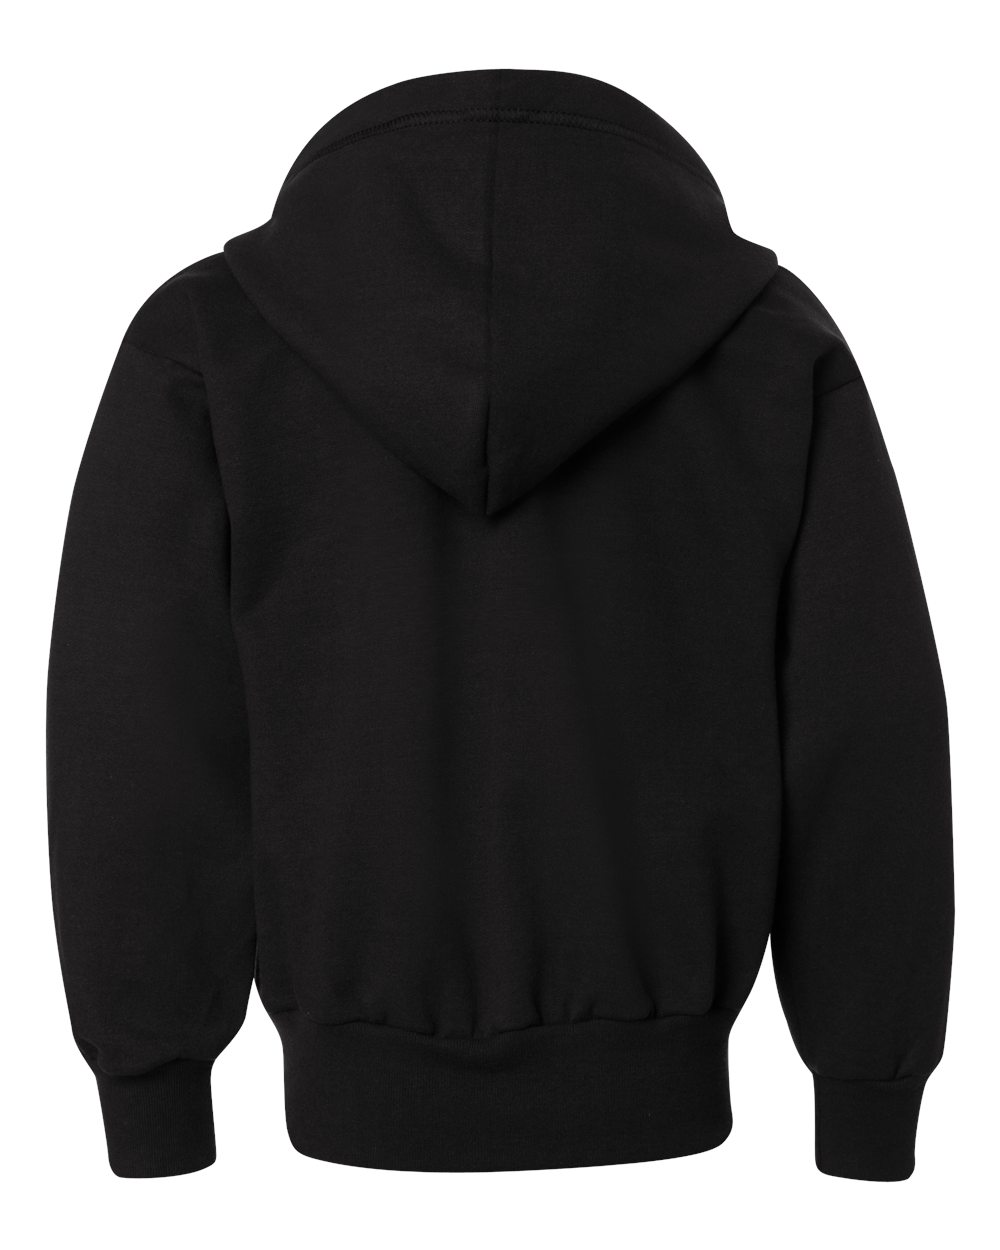 Hanes P480 - EcoSmart® Youth Full-Zip Hooded Sweatshirt